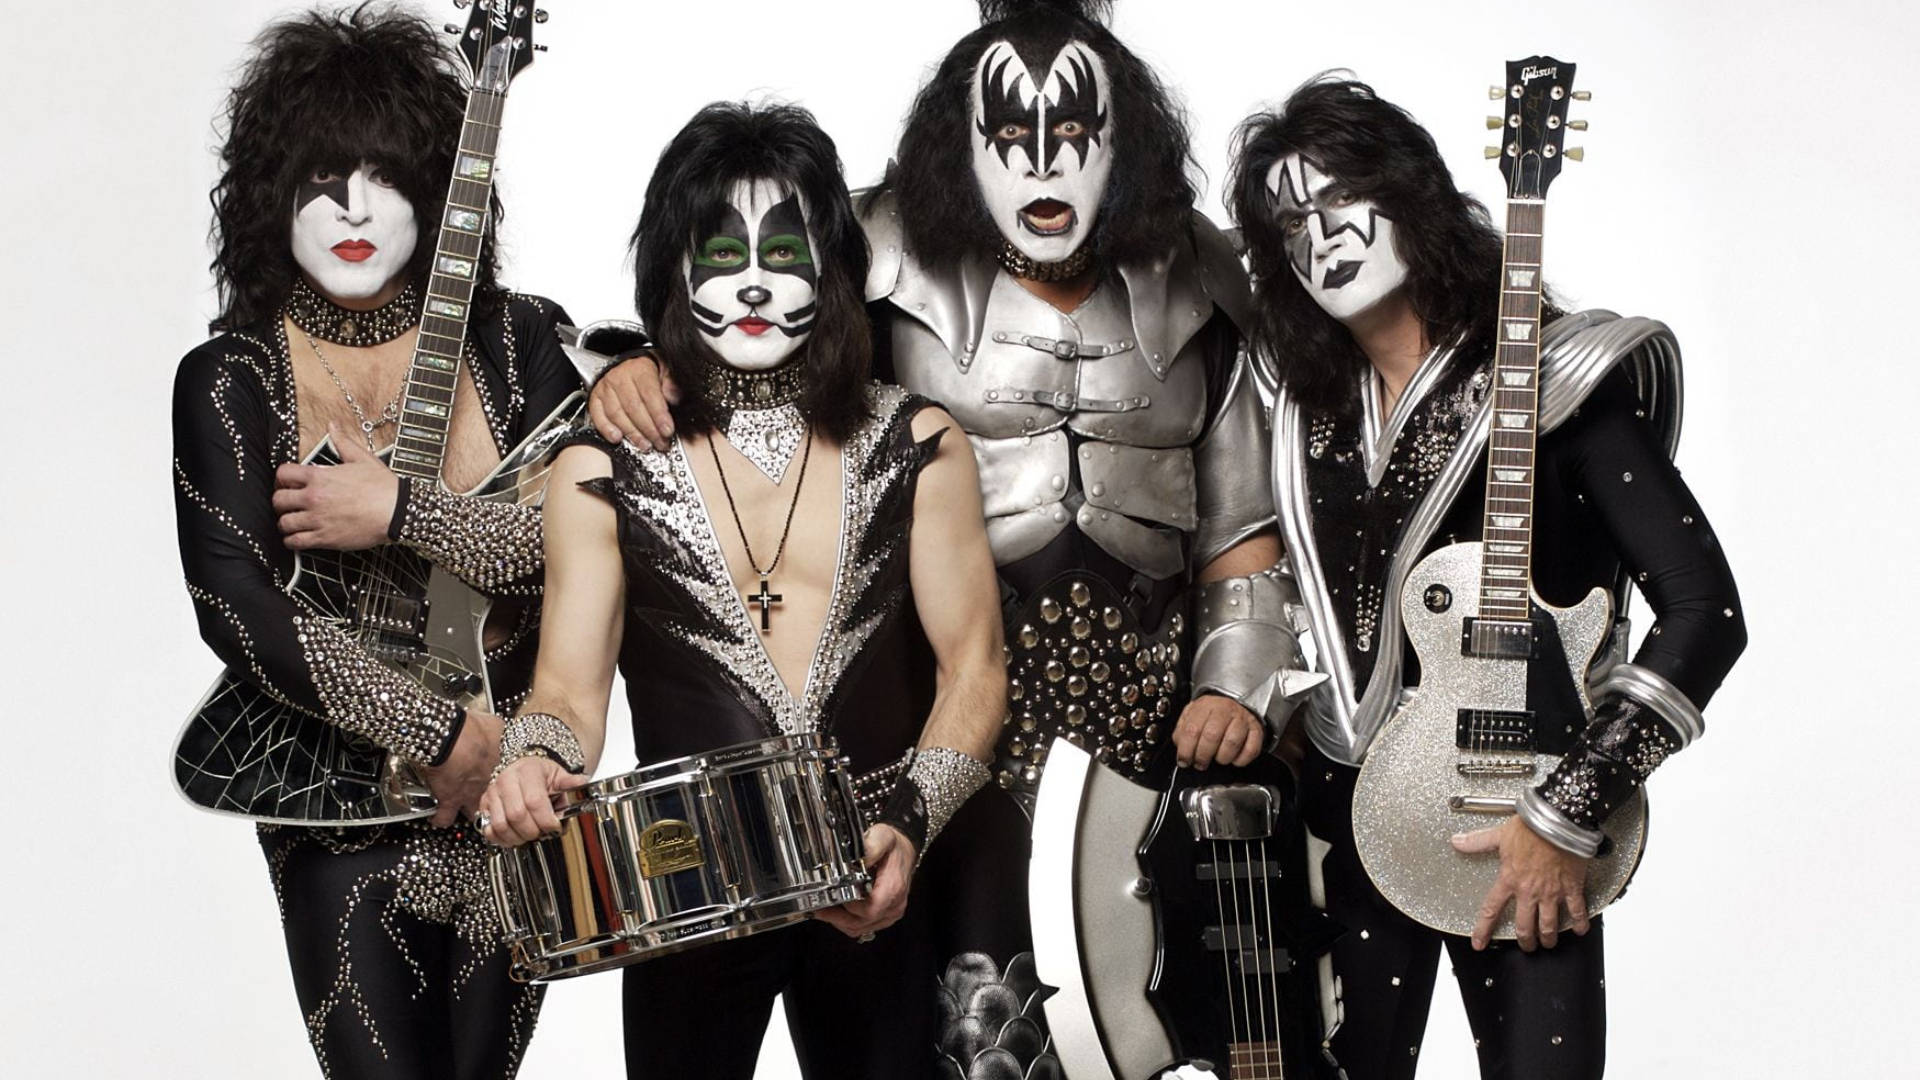 Kiss Band Members Costume Wallpaper